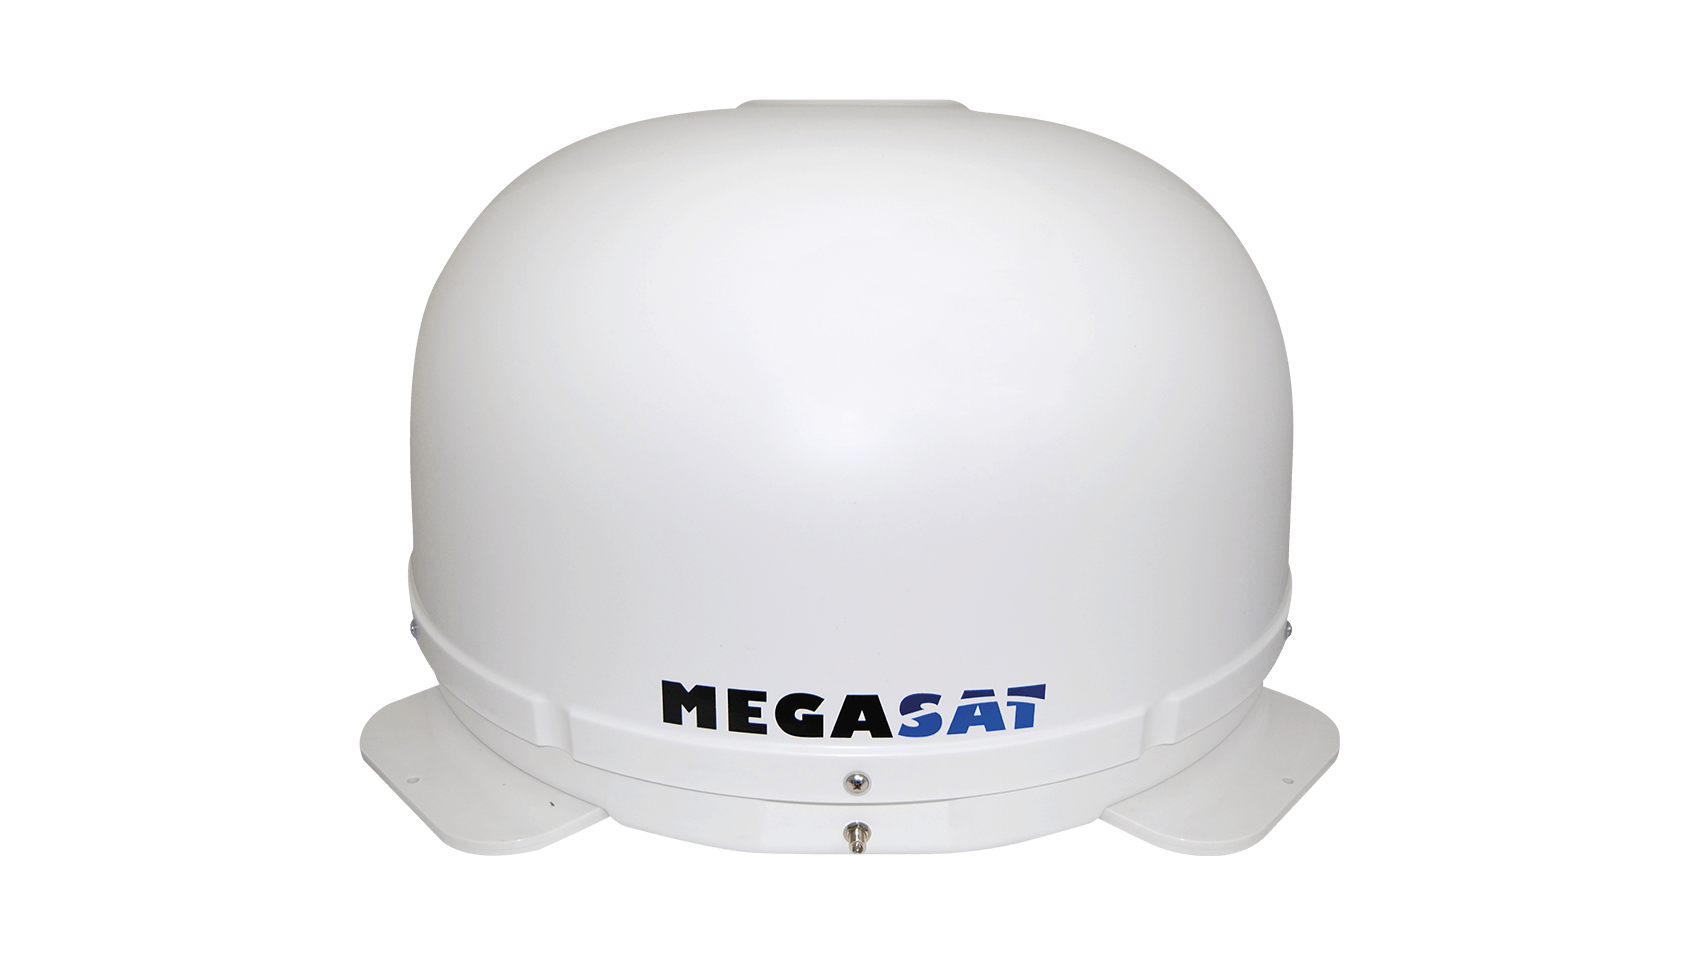 Shipman – Megasat